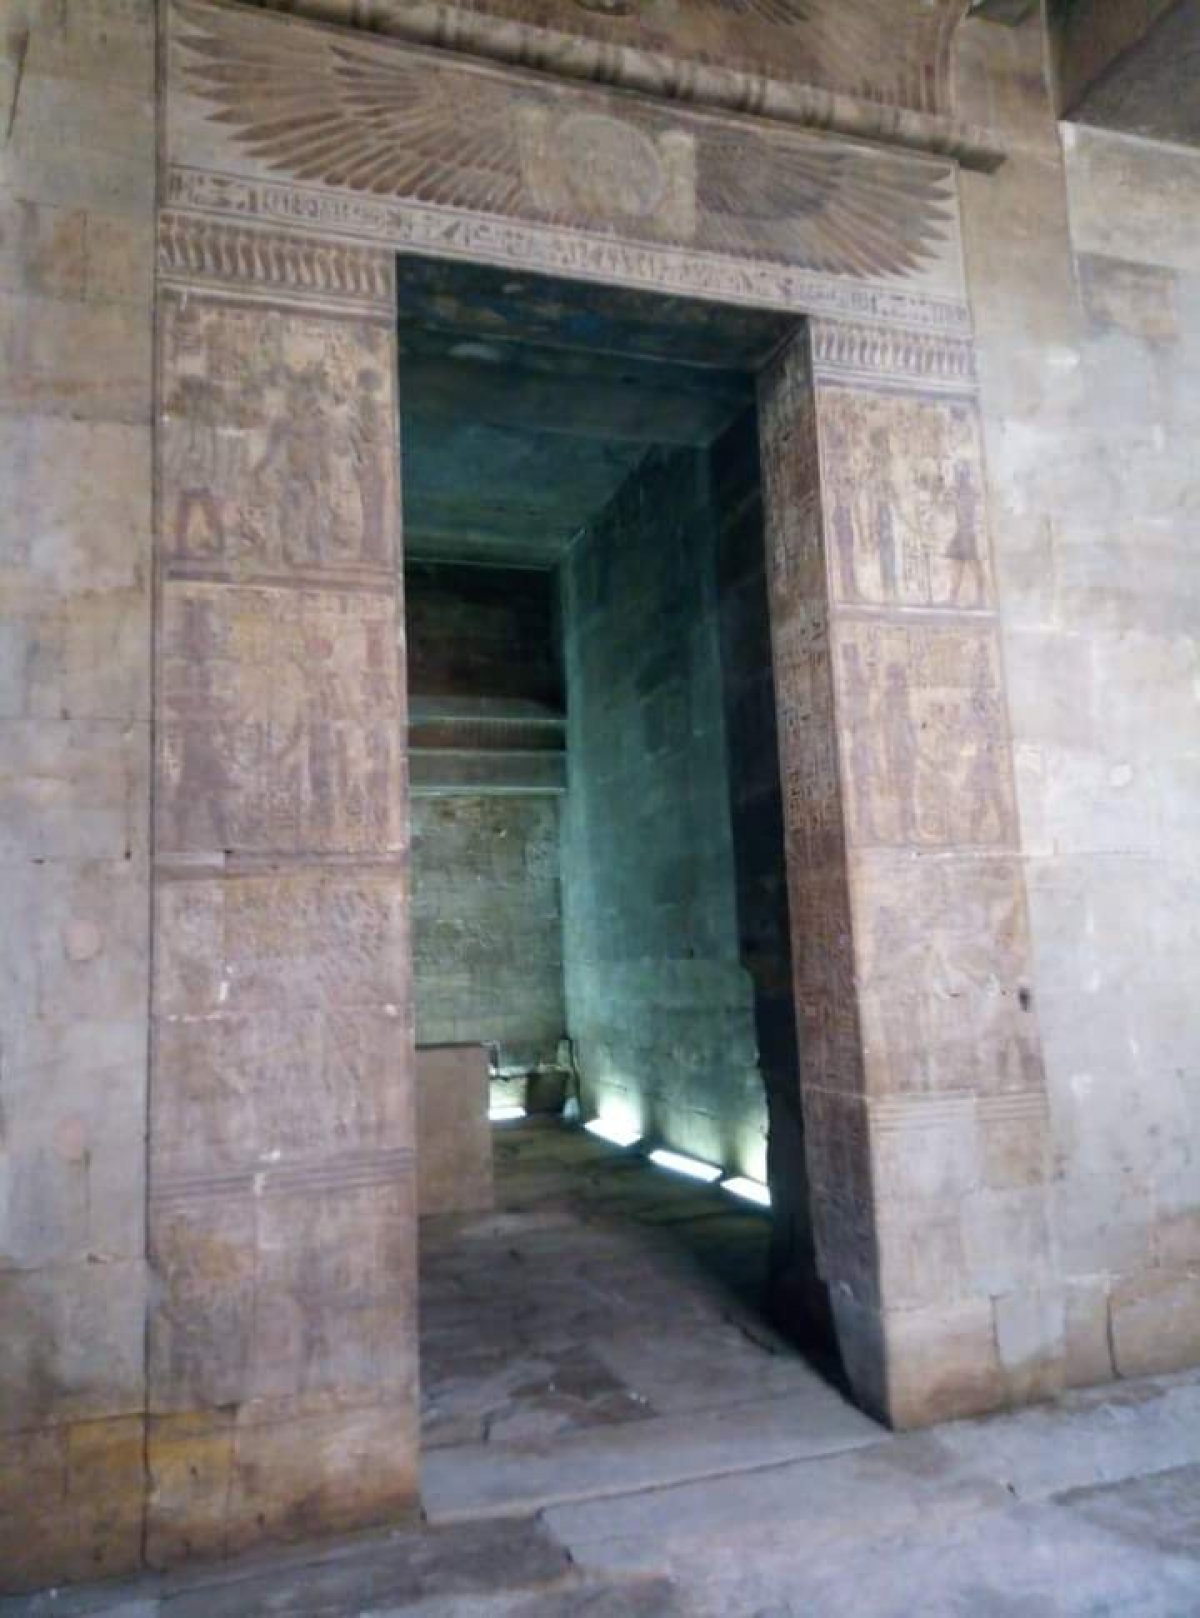 تمهيدا لافتتاحه قريبا.. السياحة والآثار تنهي ترميم وتطوير معبد إيزيس بأسوان 